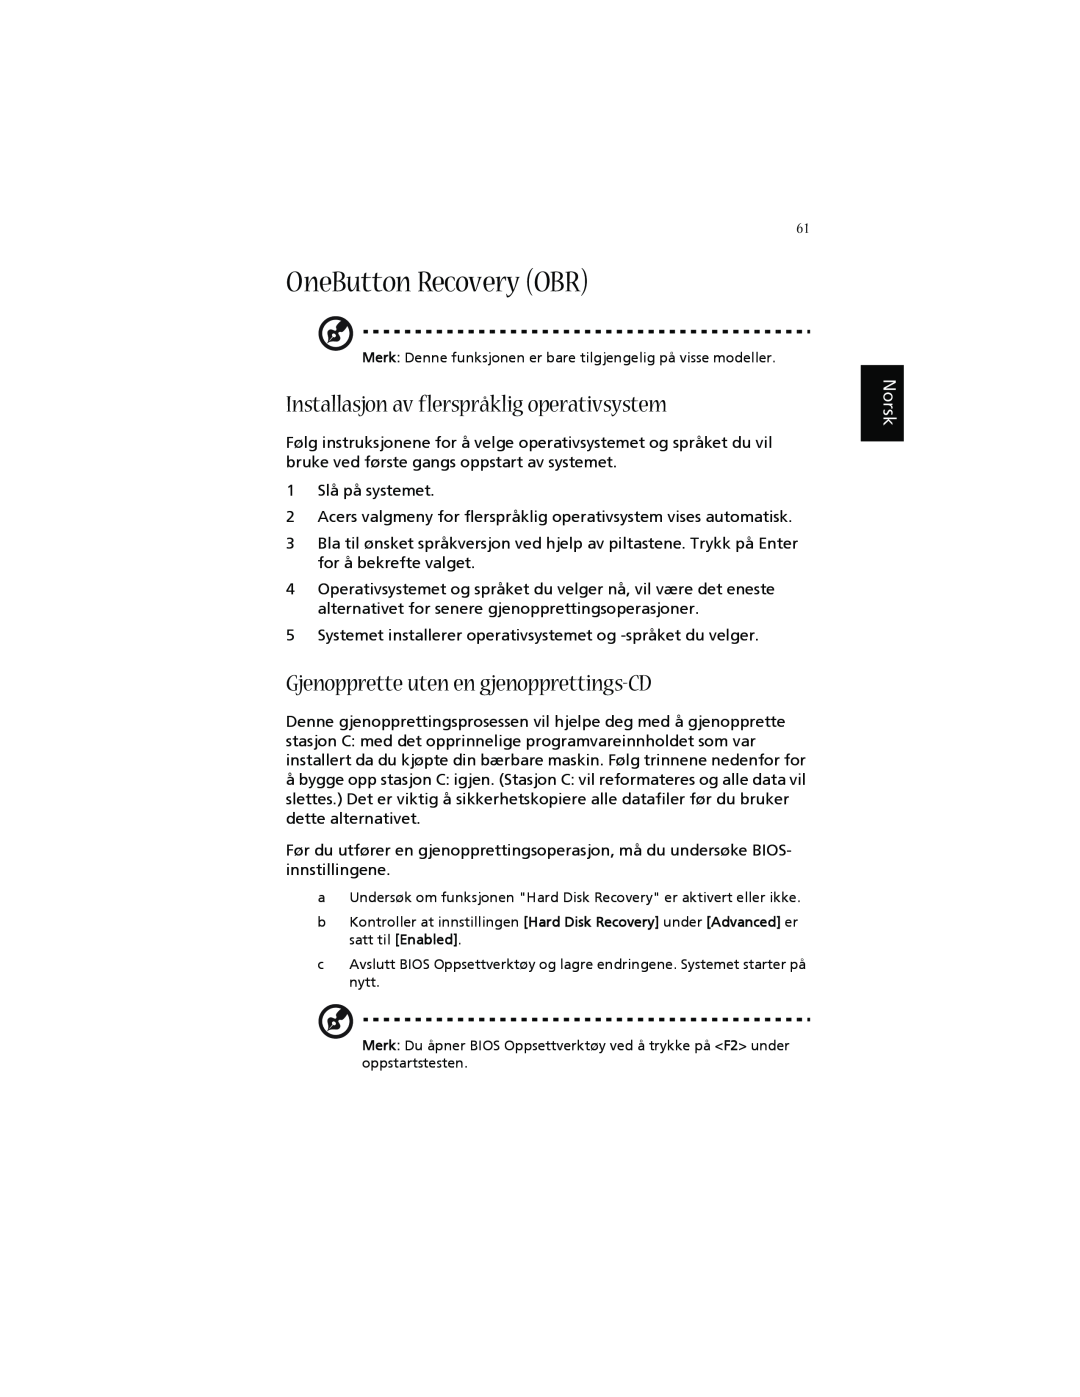 Acer 1660 OneButton Recovery OBR, Installasjon av flerspråklig operativsystem, Gjenopprette uten en gjenopprettings-CD 